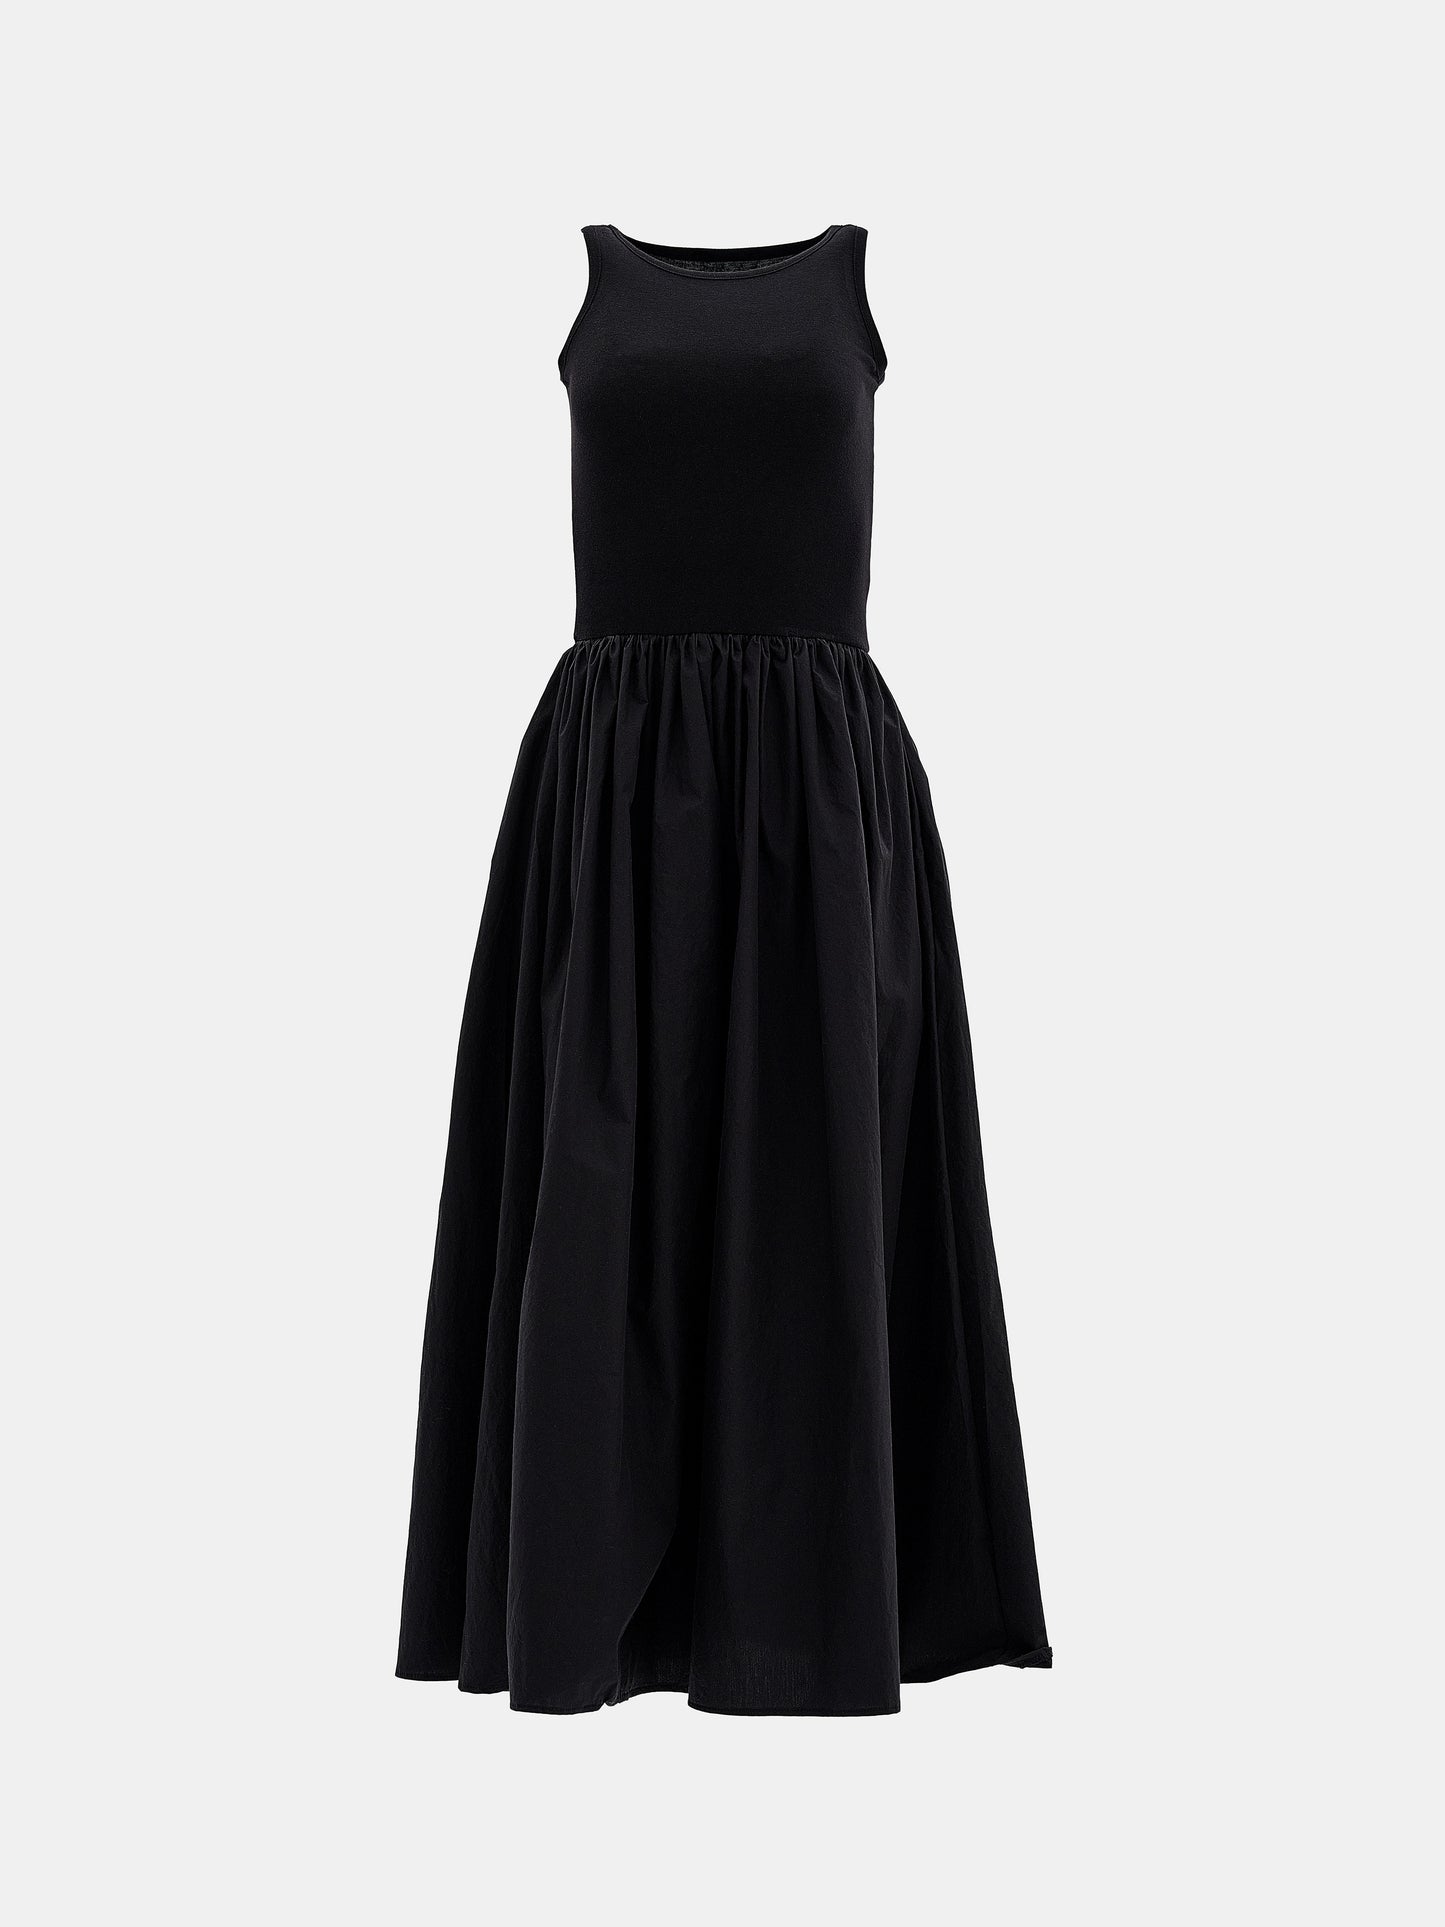 Cotton Tank Dress, Black